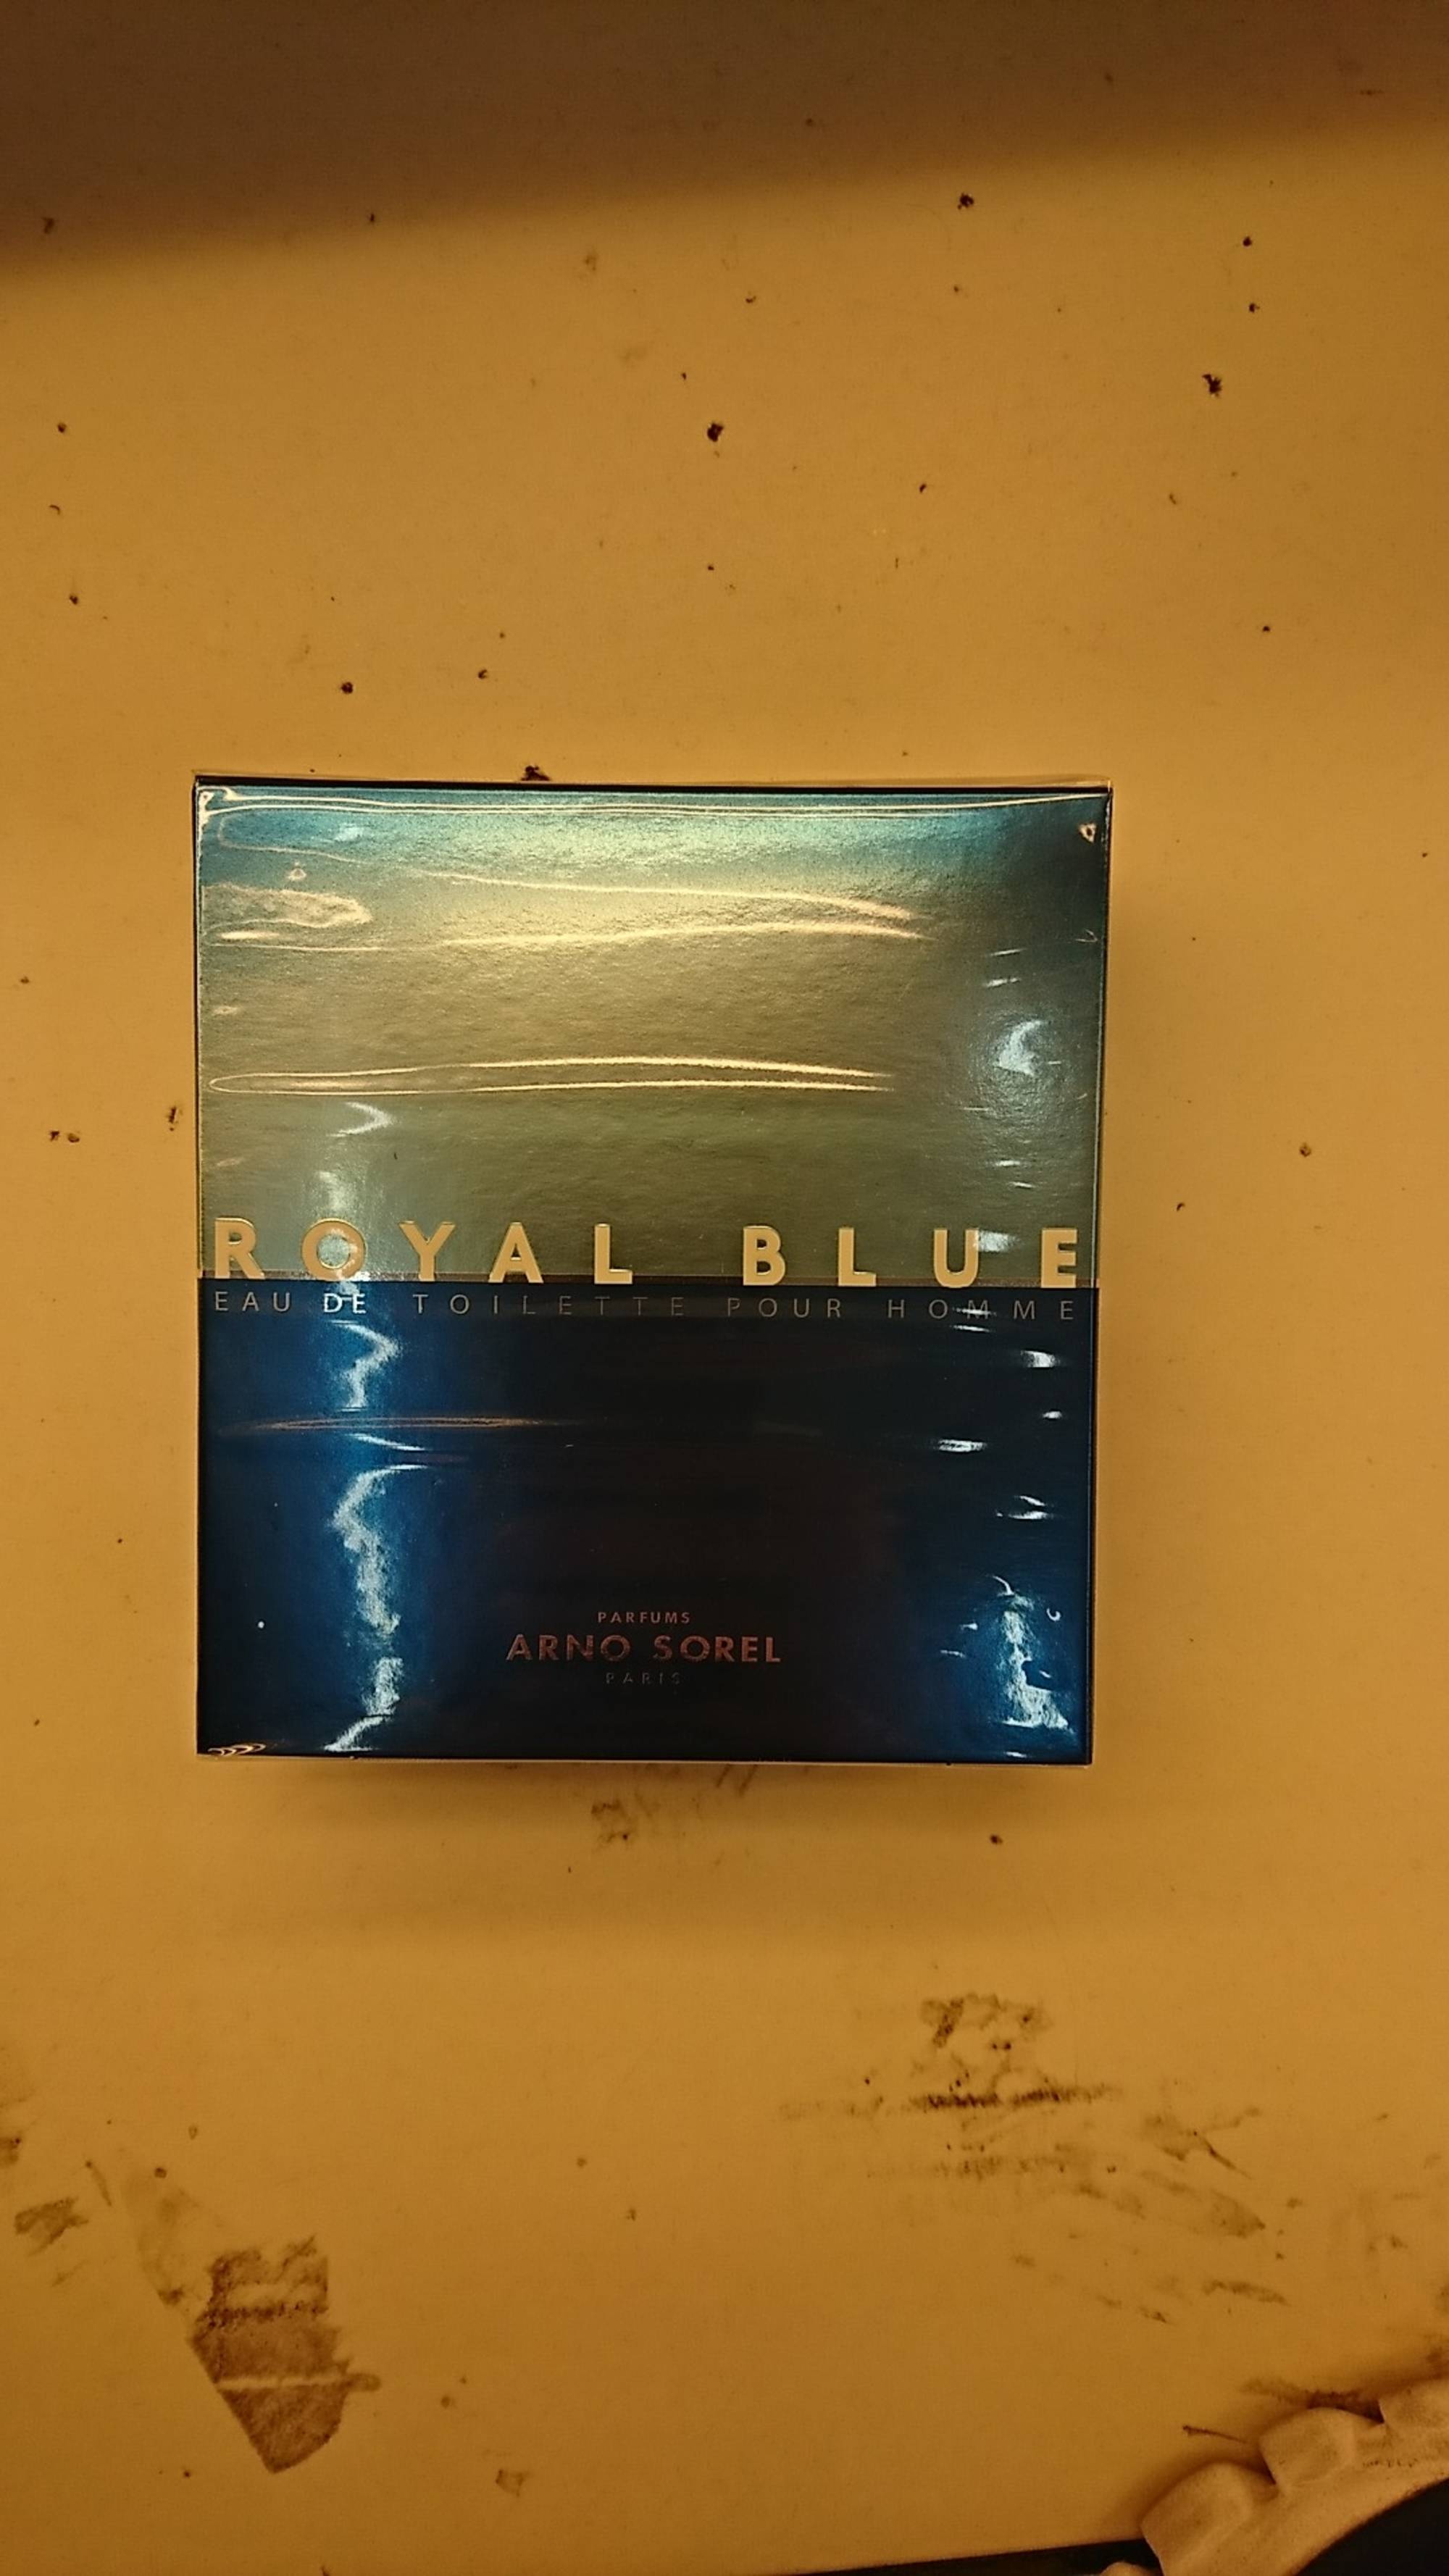 ARNO SOREL - Royal blue - Eau de toilette pour homme